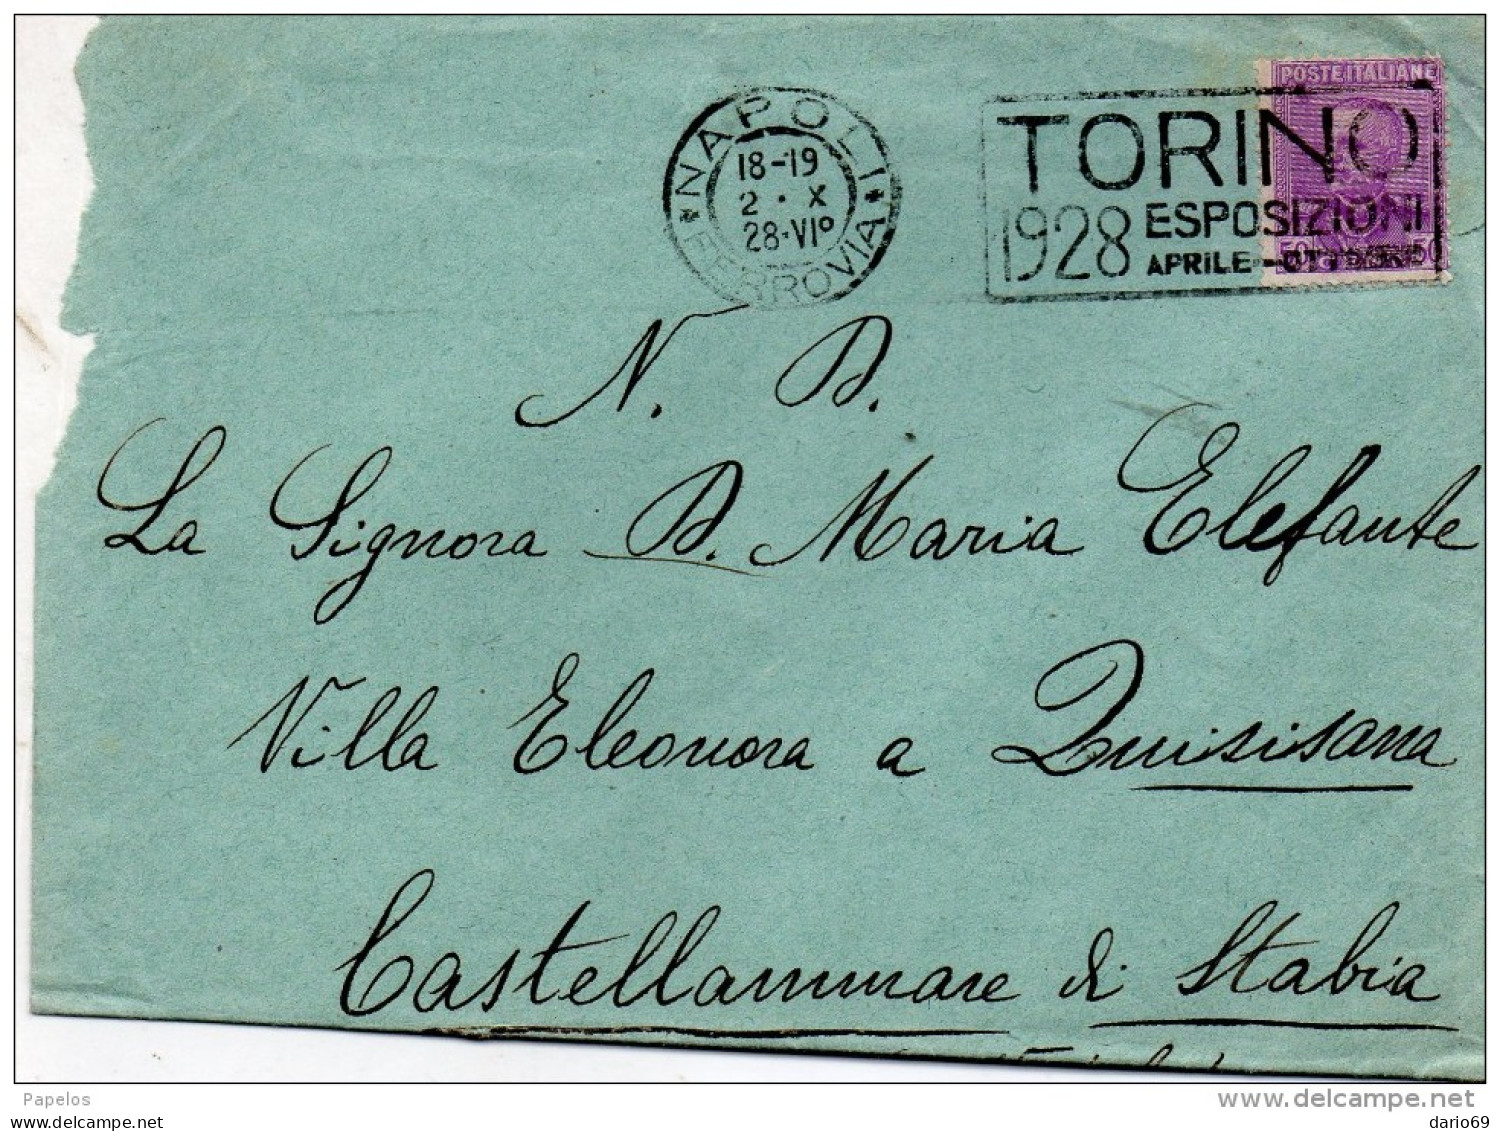 1928 LETTERA CON ANNULLO  NAPOLI + TARGHETTA   TORINO 1928 ESPOSIZIONI - Storia Postale